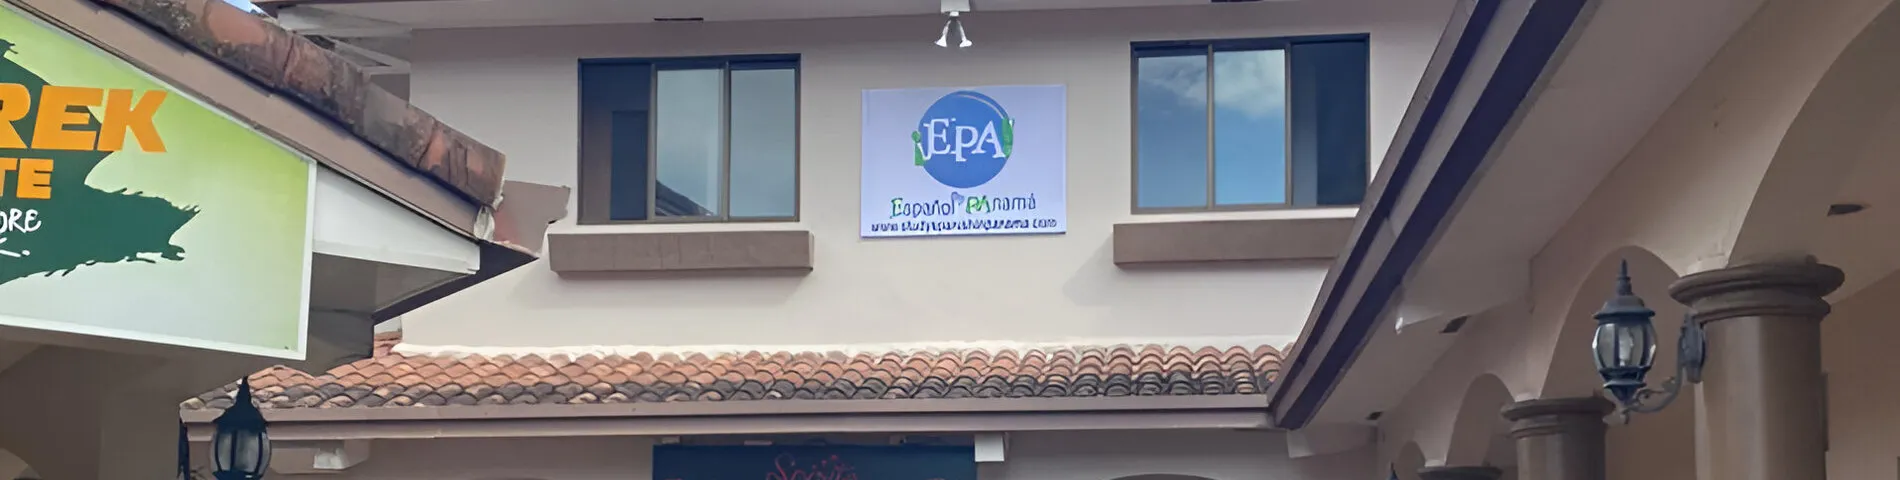 EPA! Español en Panamá snímek 1	